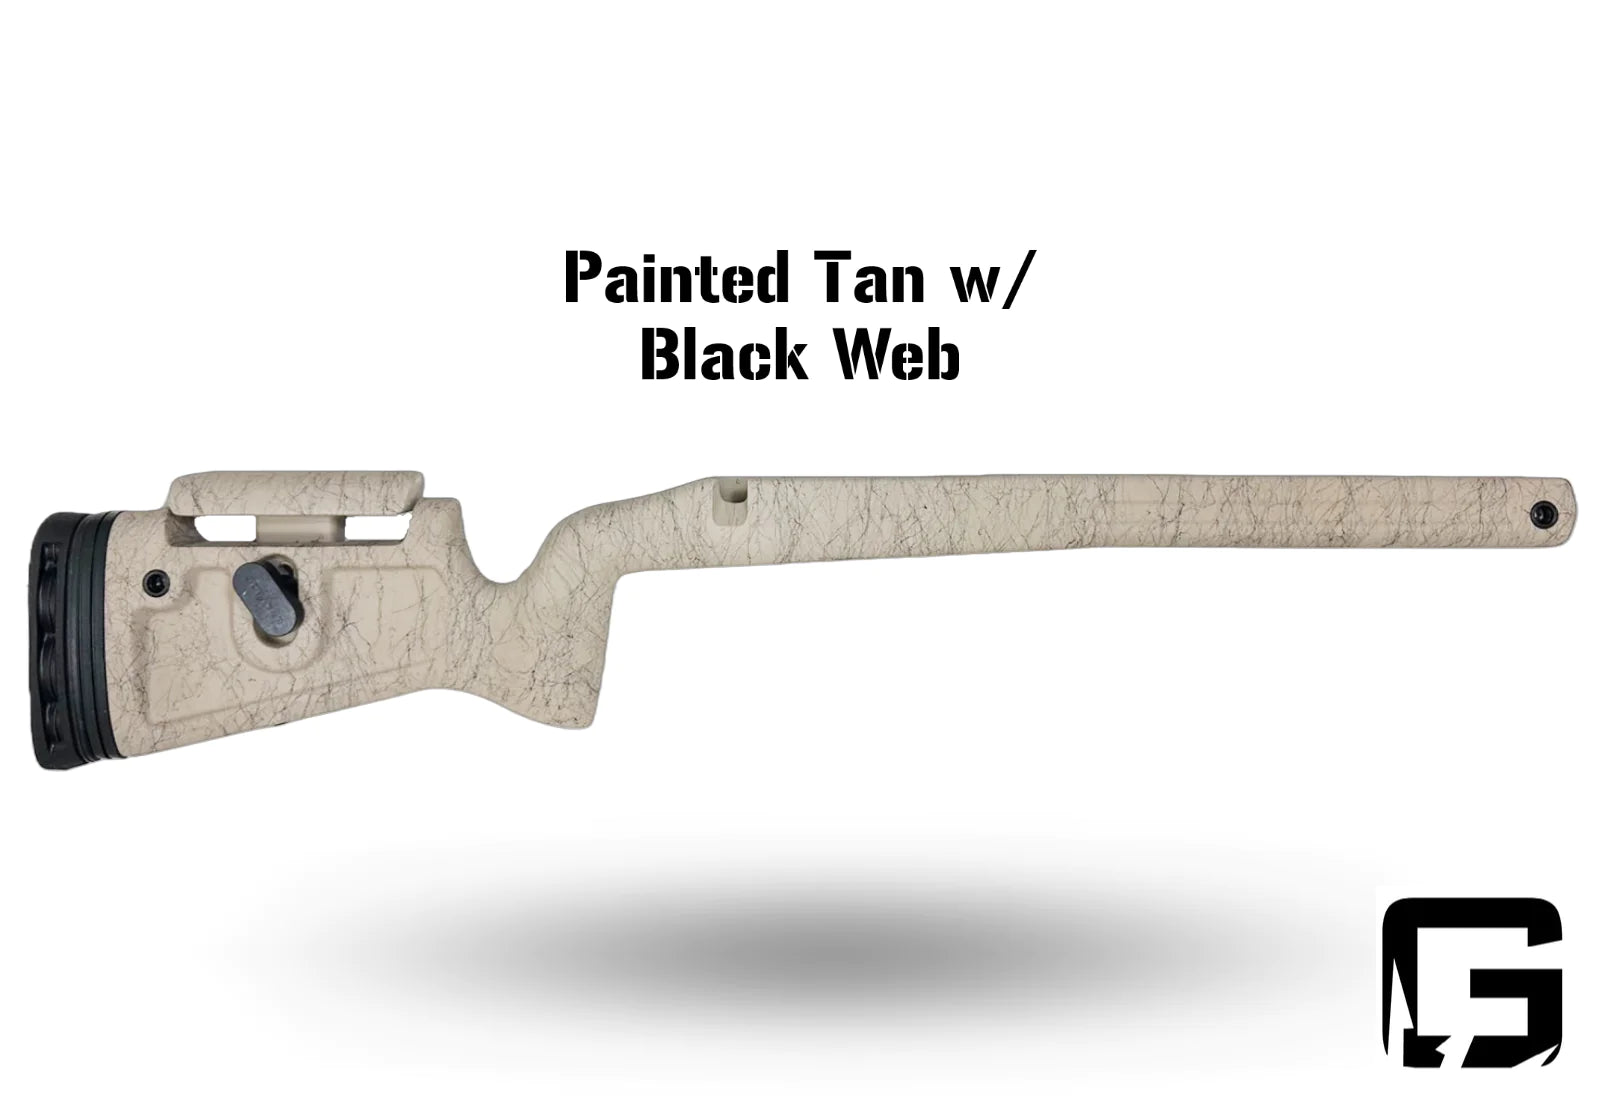 Phoenix 2 - Right Hand Tikka T3x, Tikka Factory Plastic DBM, Fits any barrel. Painted Tan w/ Black Web